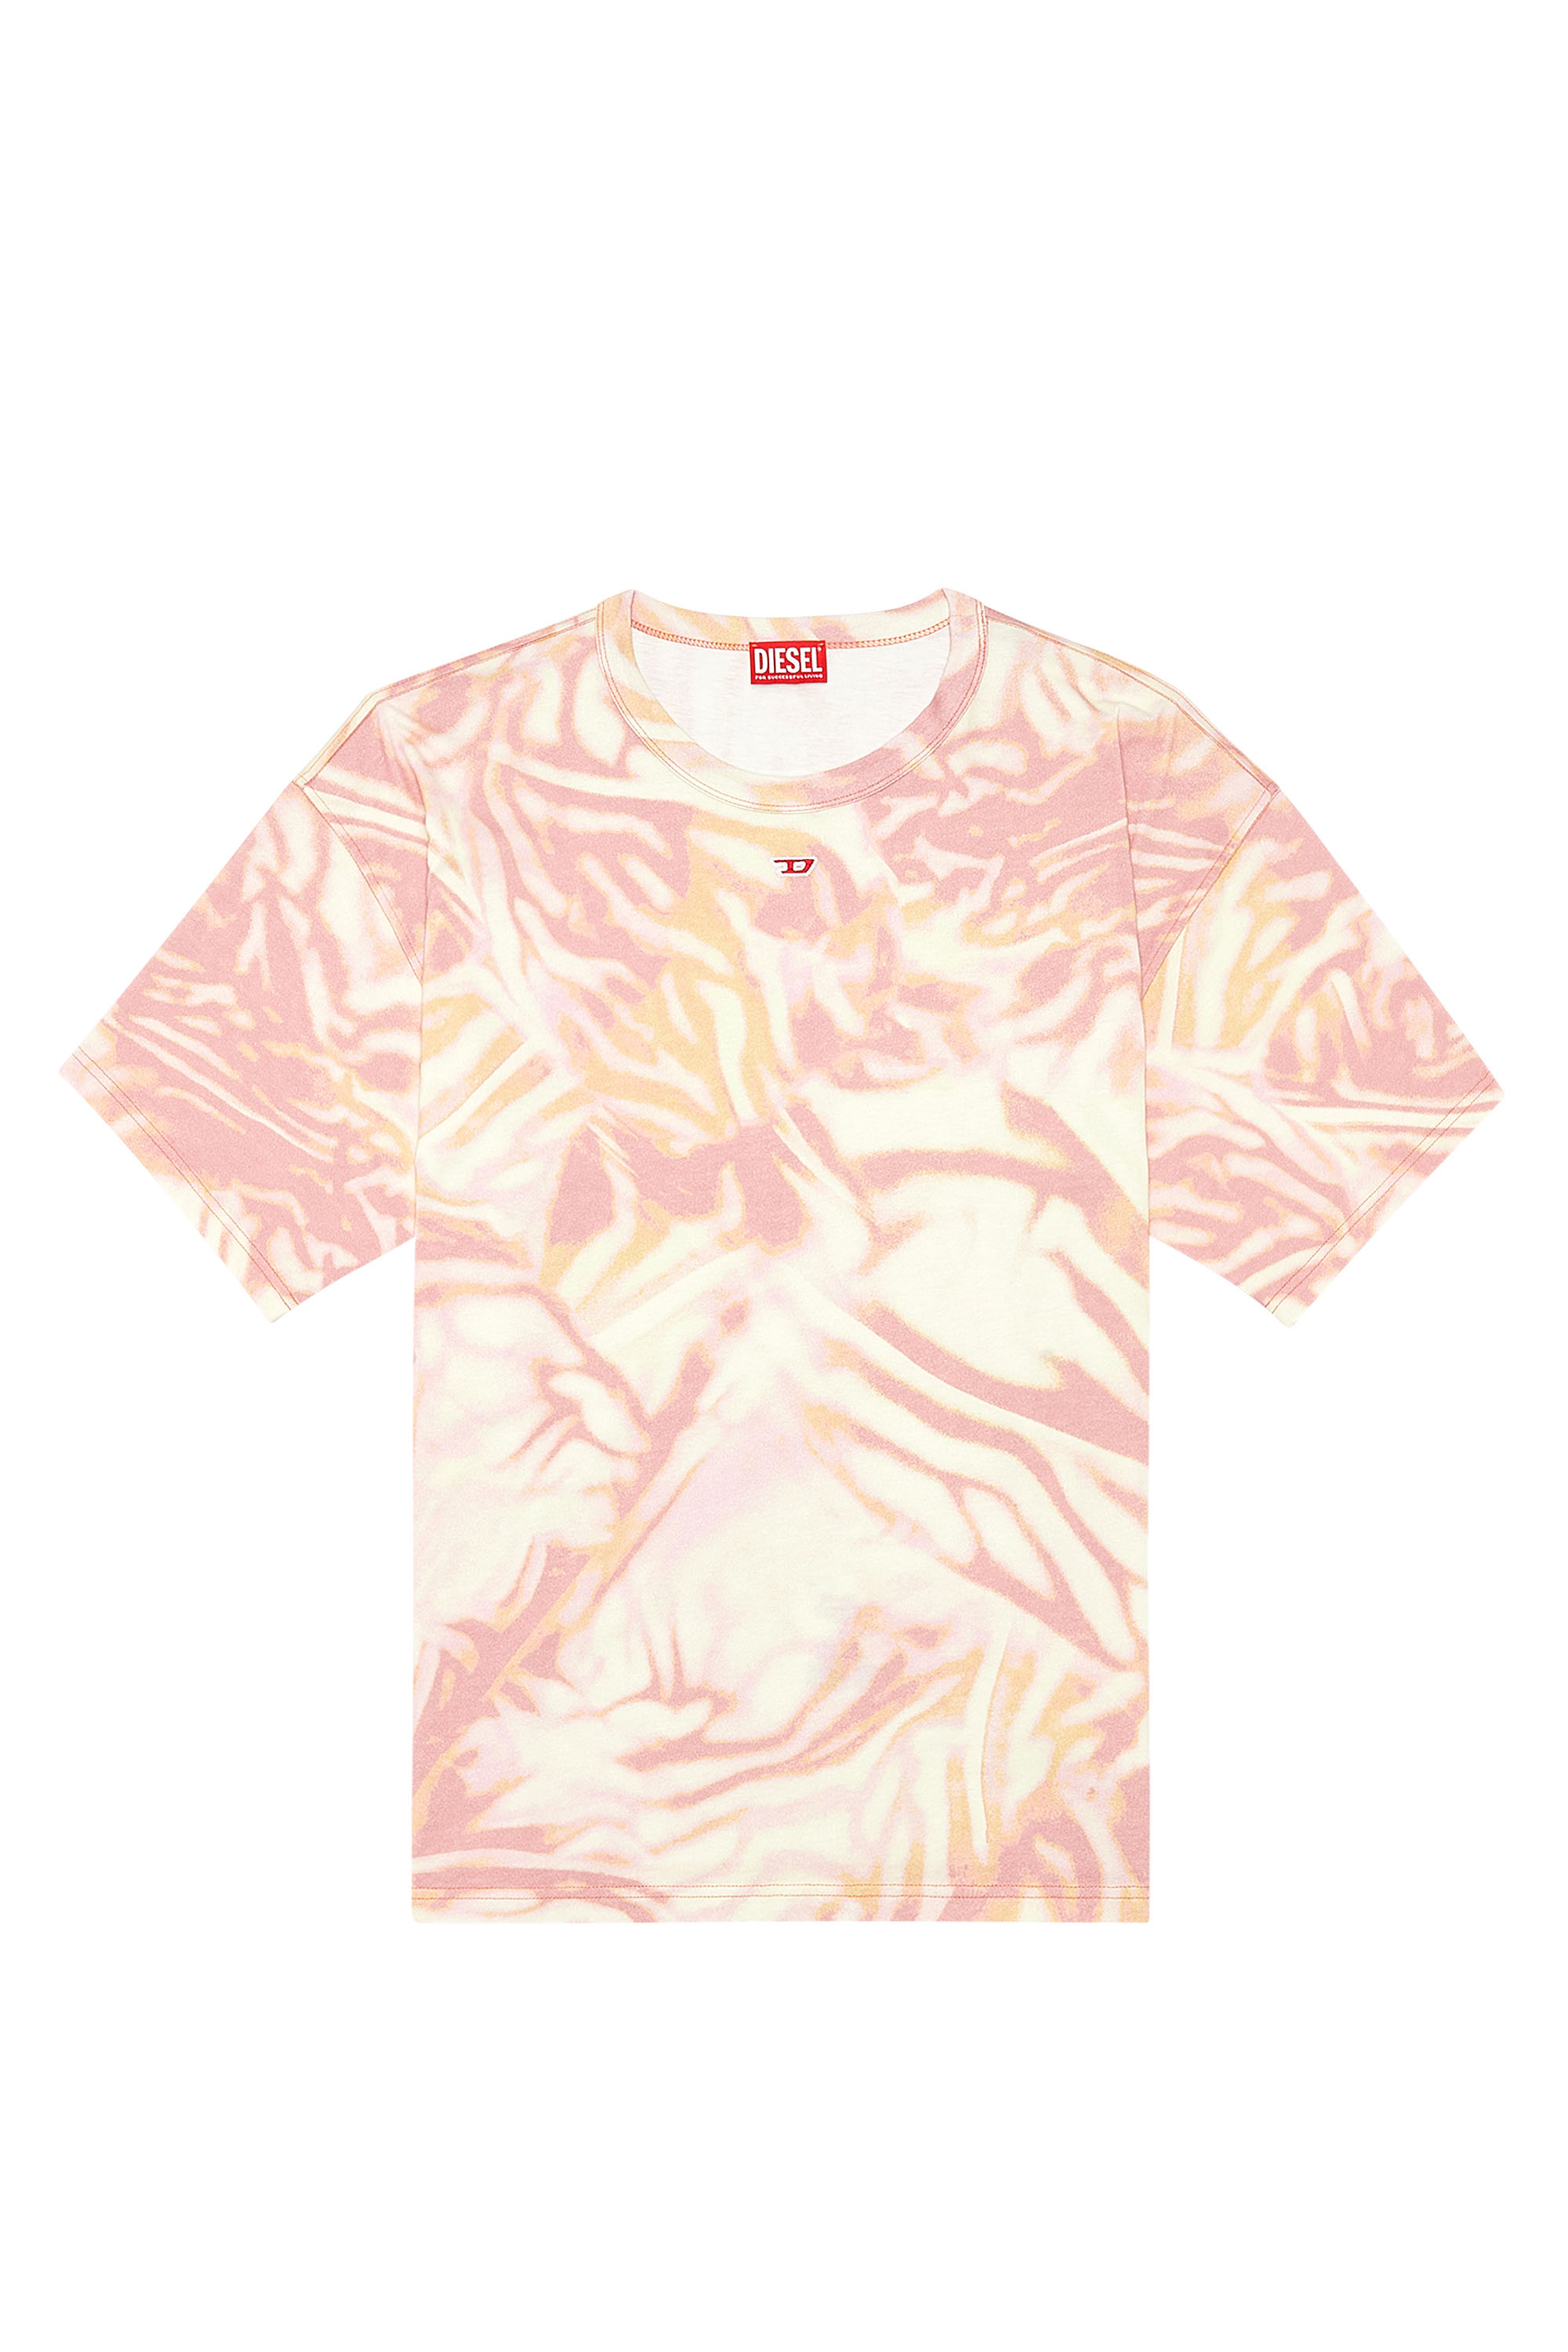 Diesel - T-BOXT-N3, Homme T-shirt avec imprimé camouflage zébré in Rose - Image 3